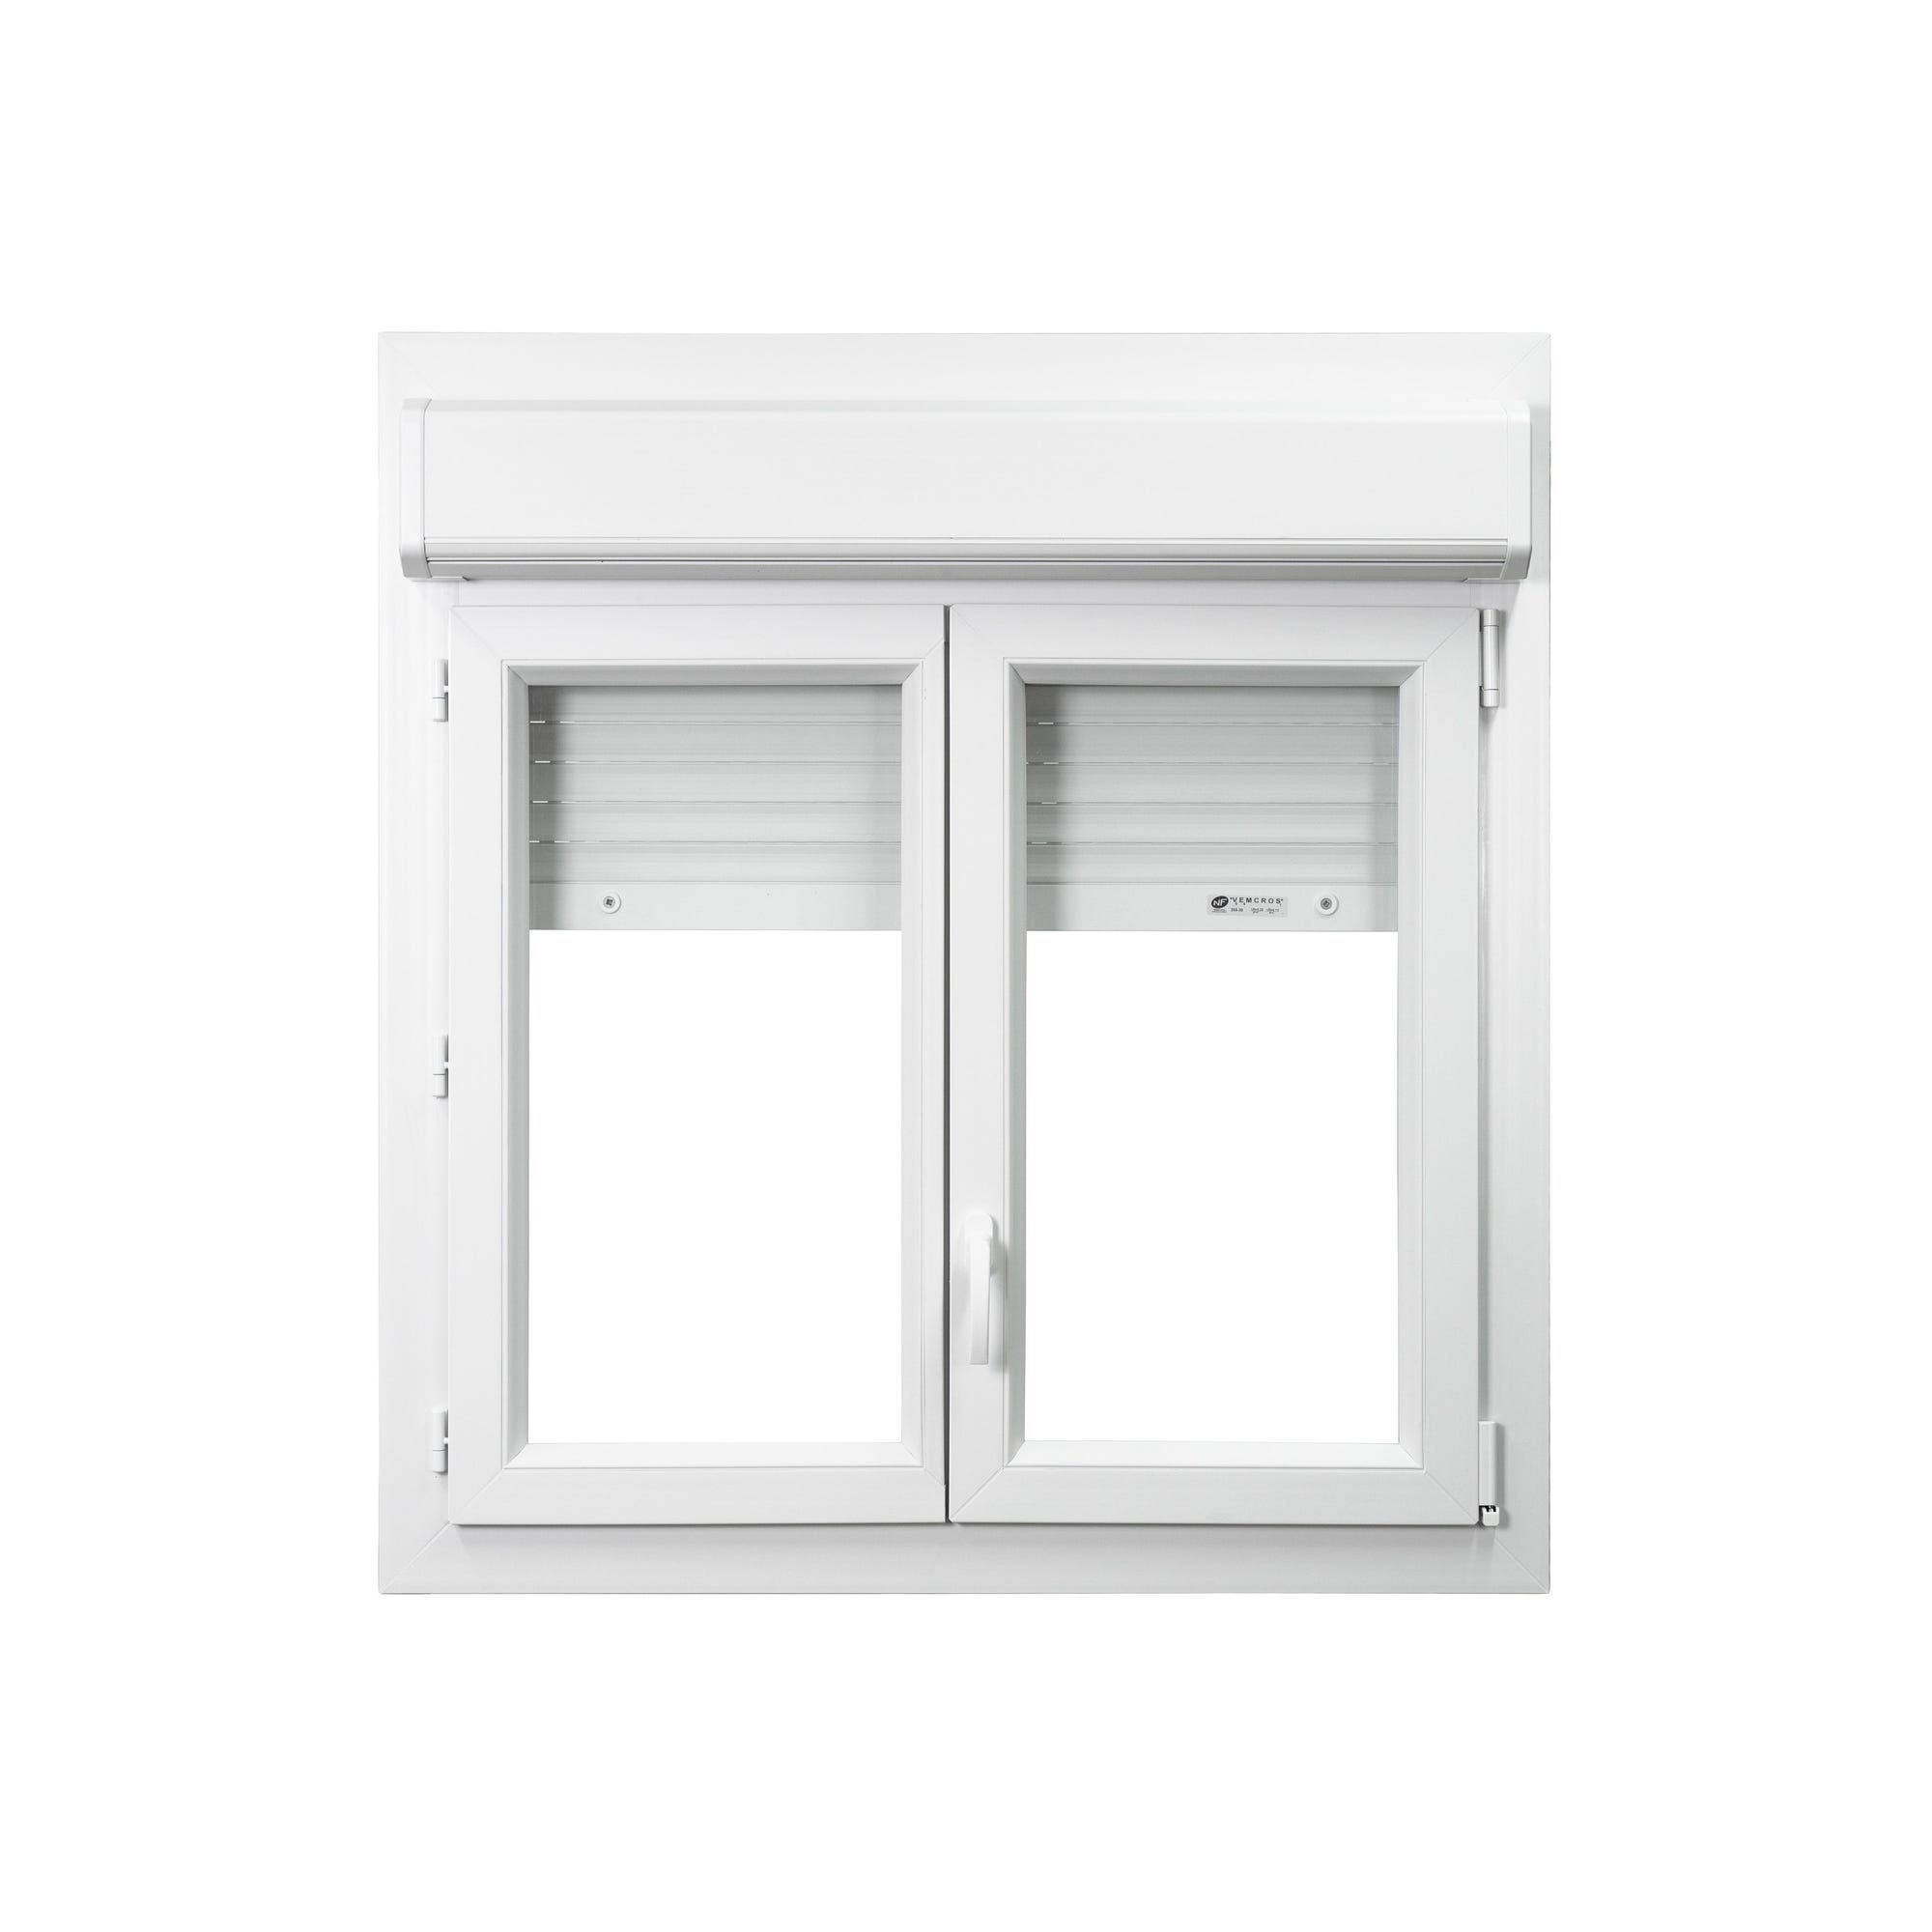 Fenêtre PVC 2 vantaux avec volet roulant intégré monobloc H.105 x l.120 cm - GROSFILLEX 0